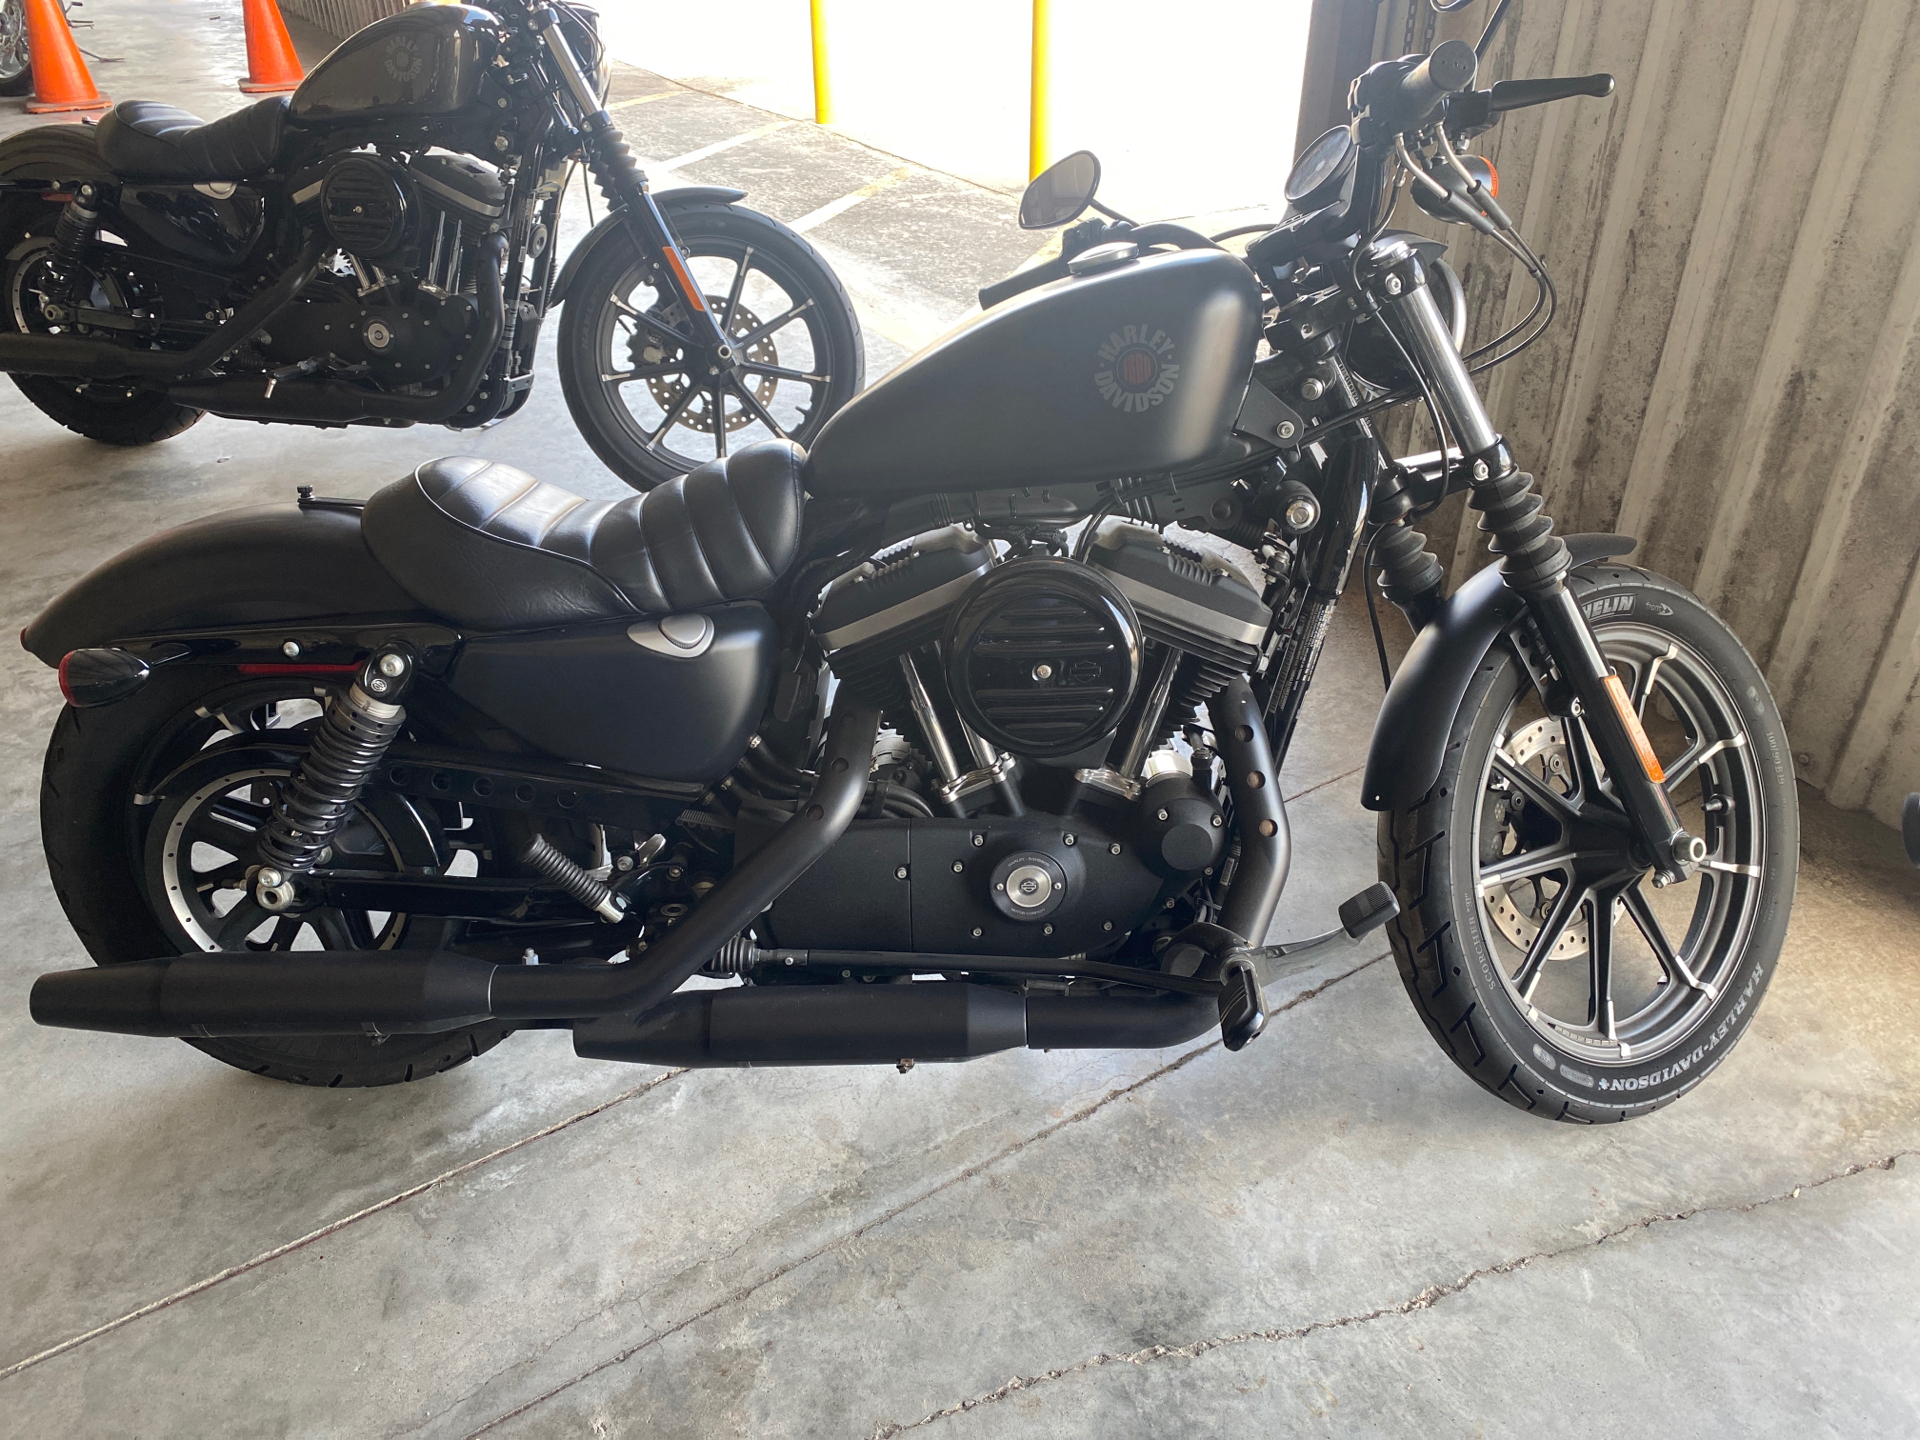 2019 Harley-Davidson Iron 883™ in Houston, Texas - Photo 2